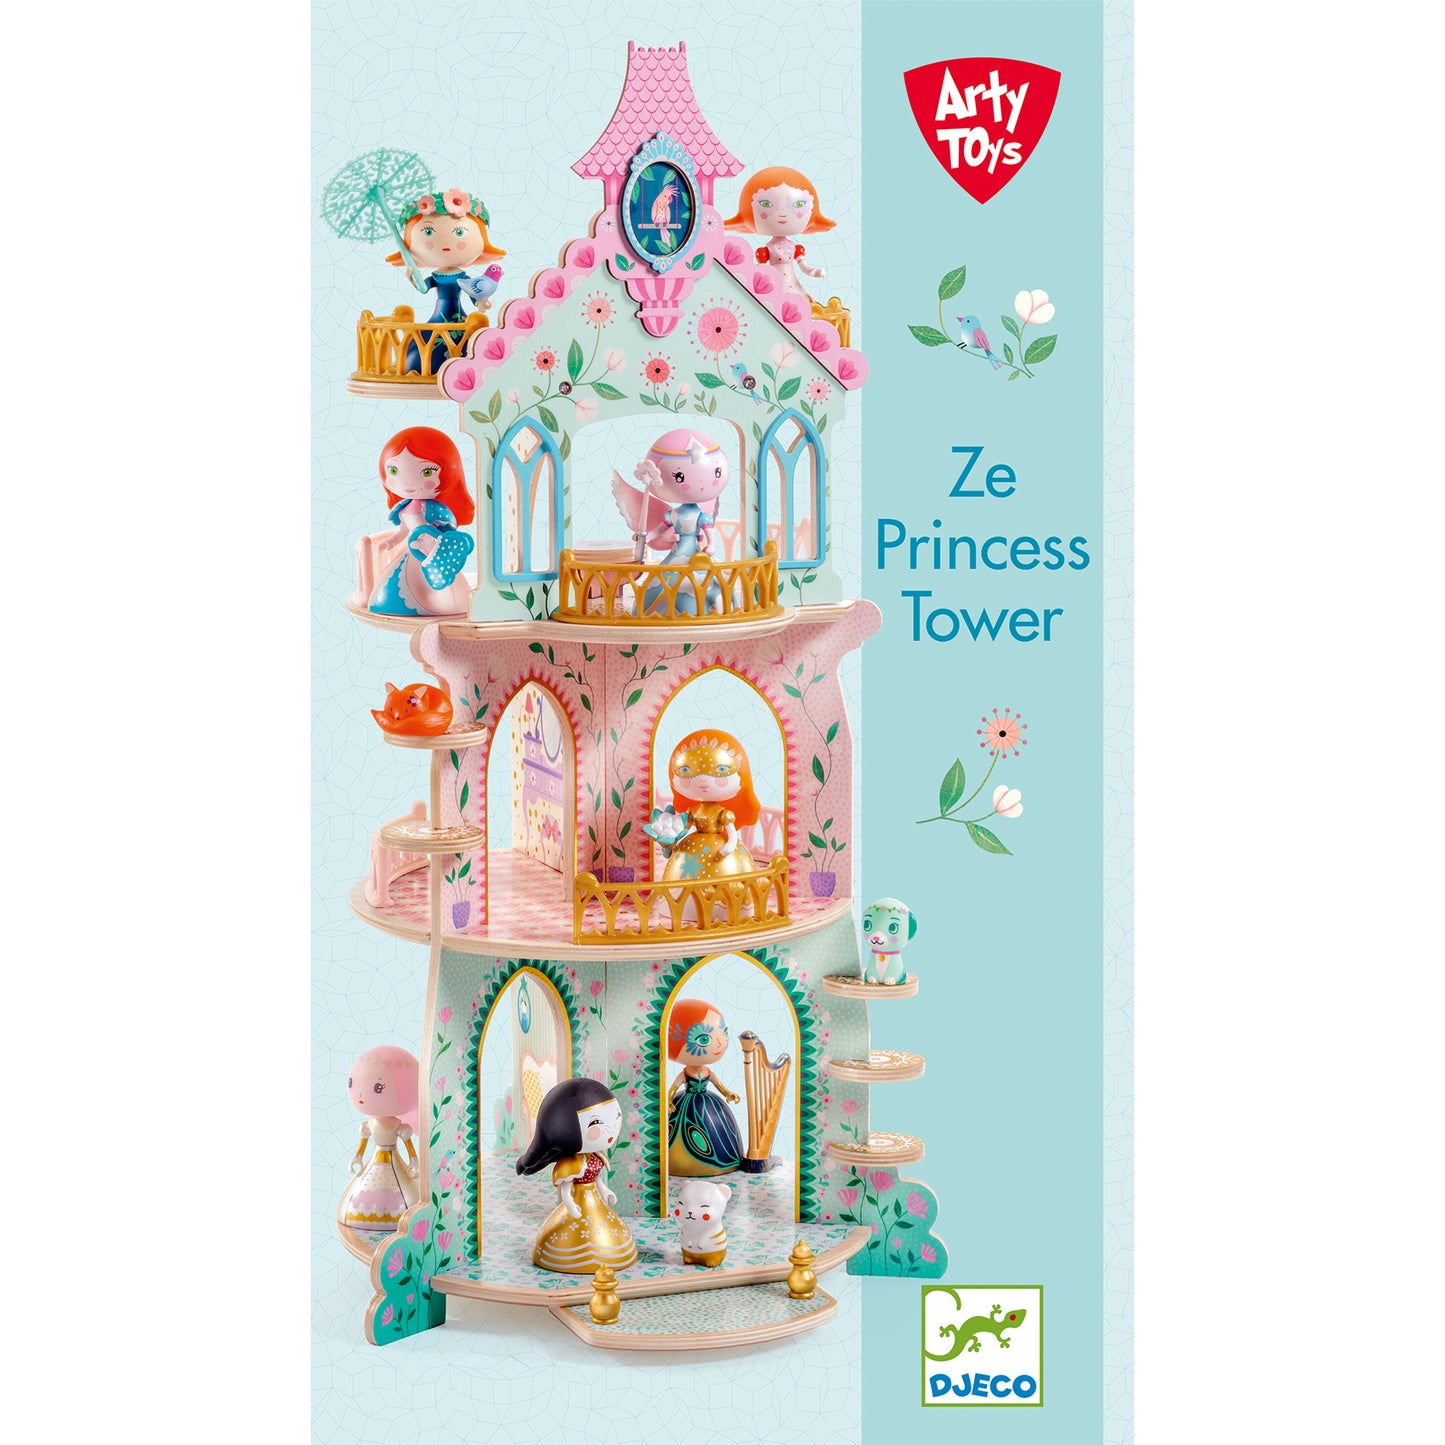 Torre delle Principesse - Ze Princess Tower